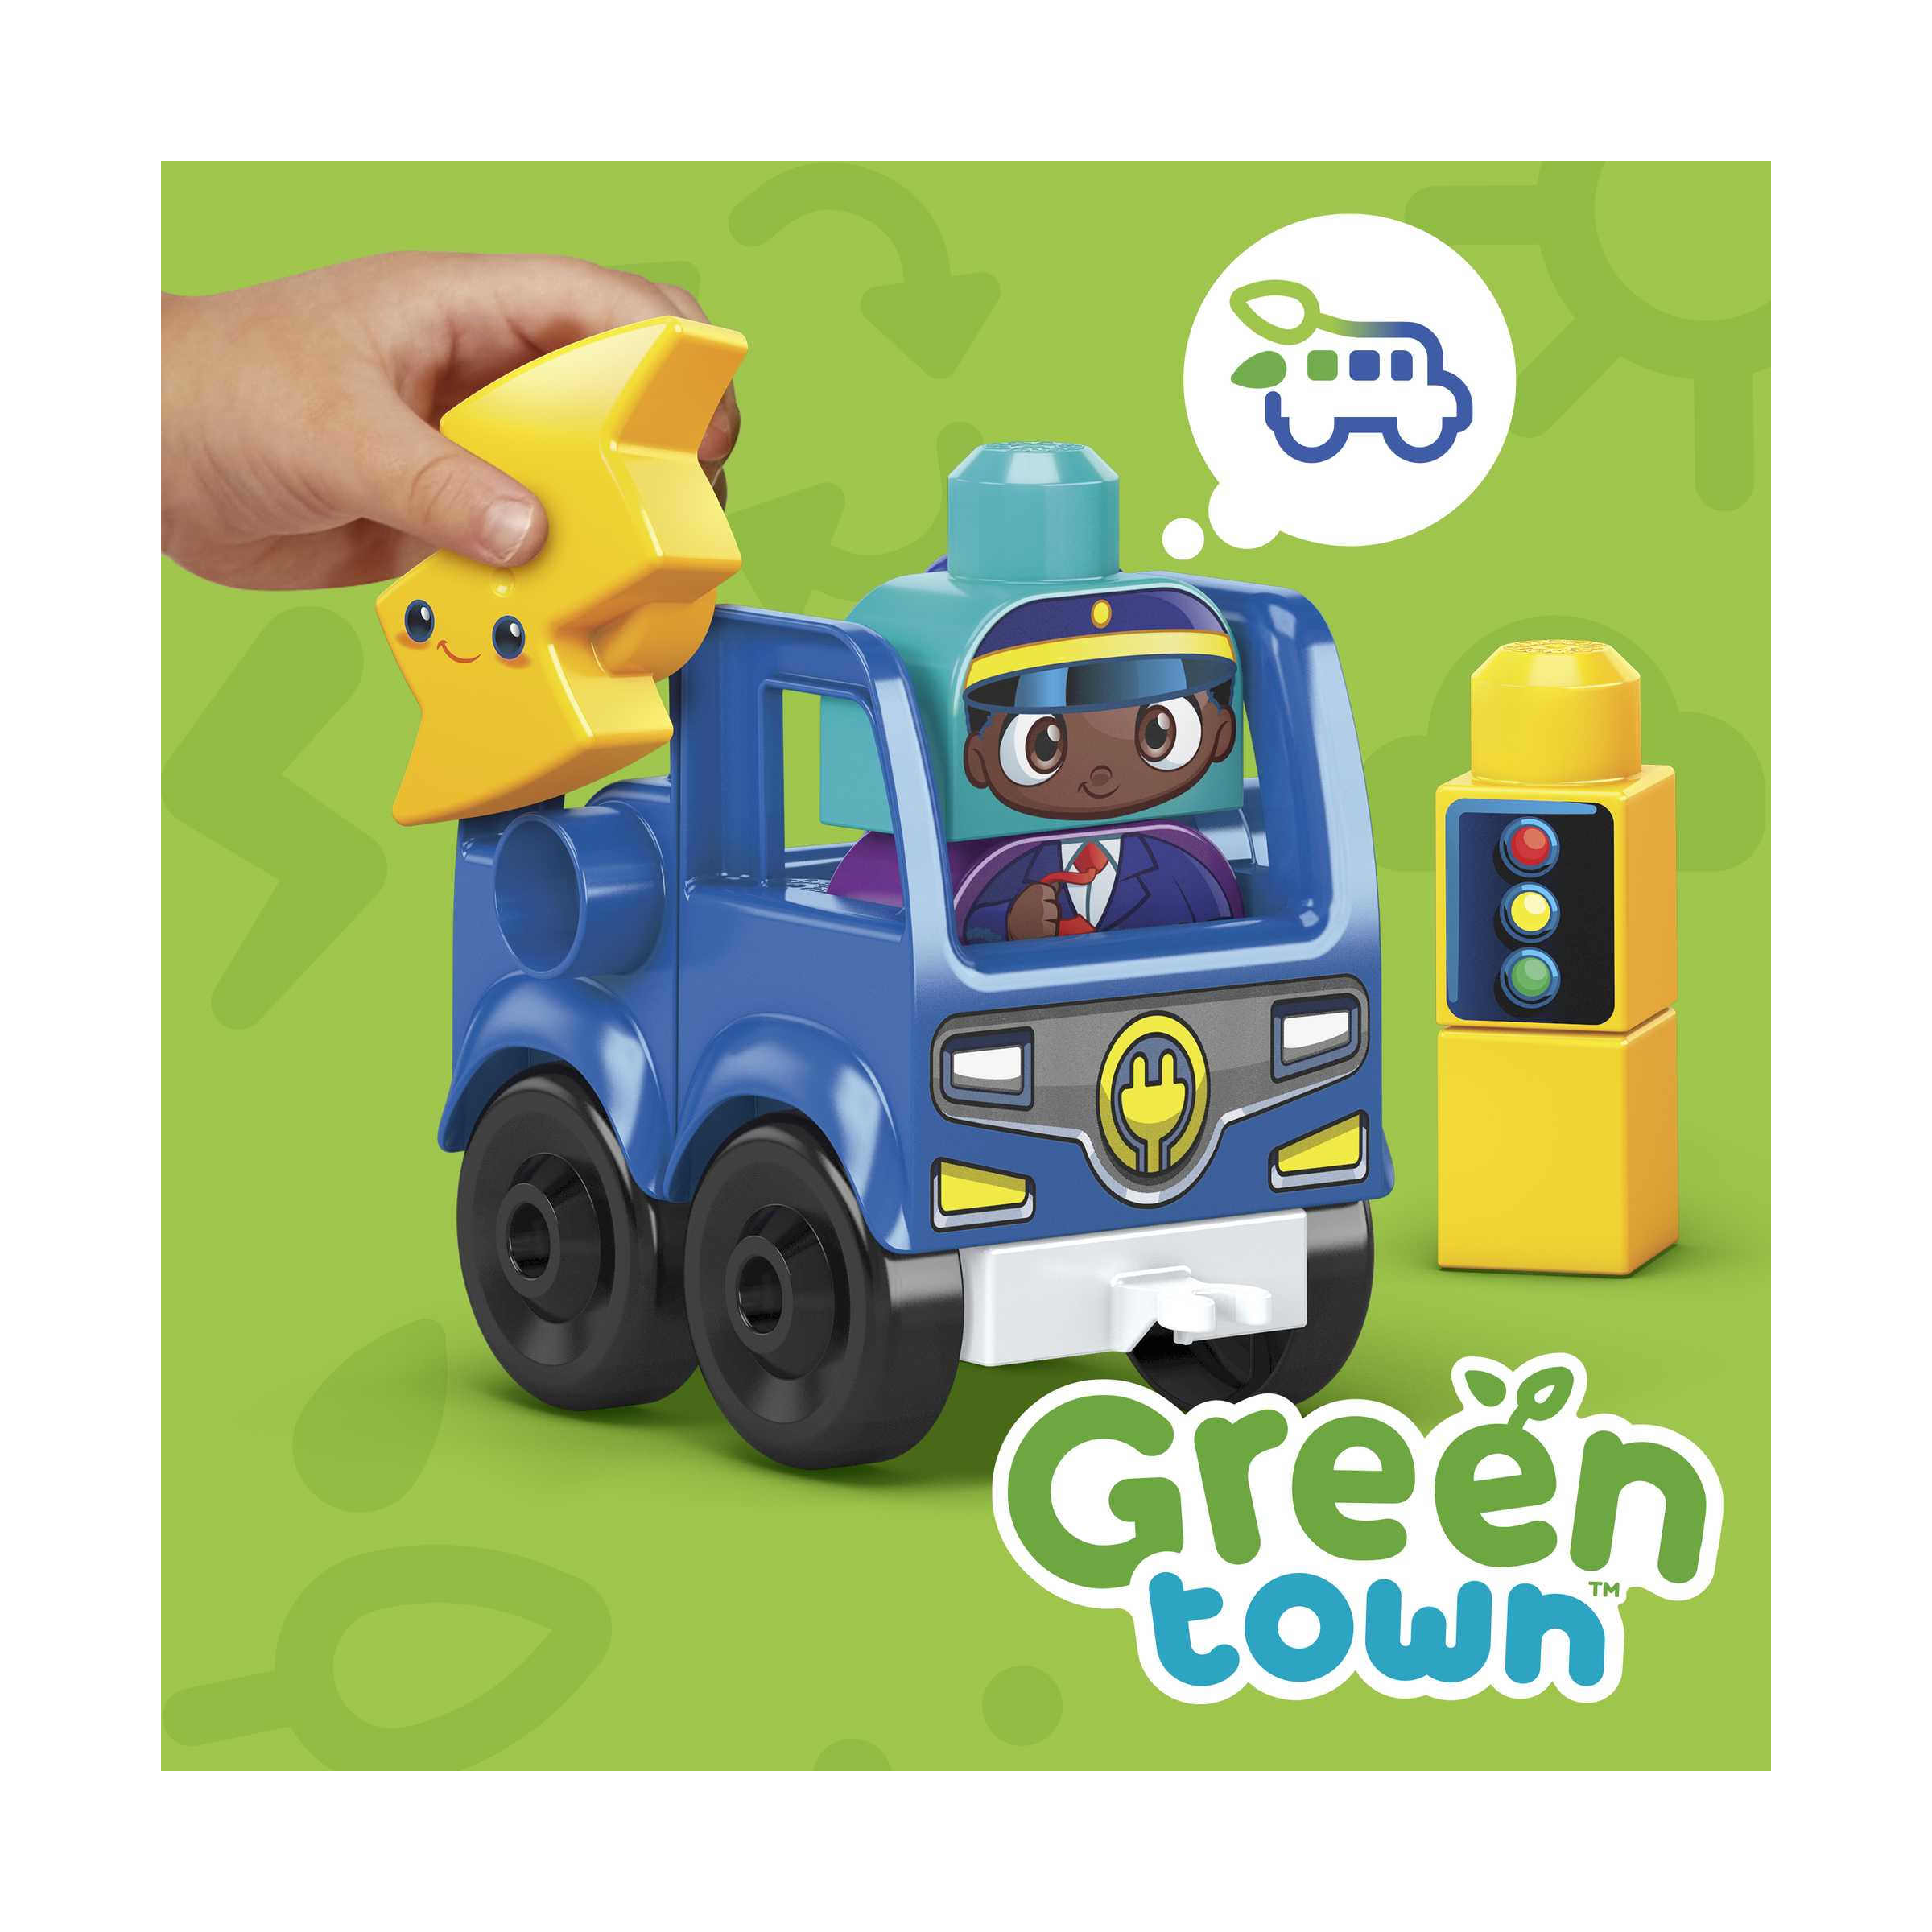 Mega bloks - green town bus ecologico amici bio, set da costruzione con 36 blocchi, giocattolo per bambini 1+ anni, hdx90 - MEGA BLOKS